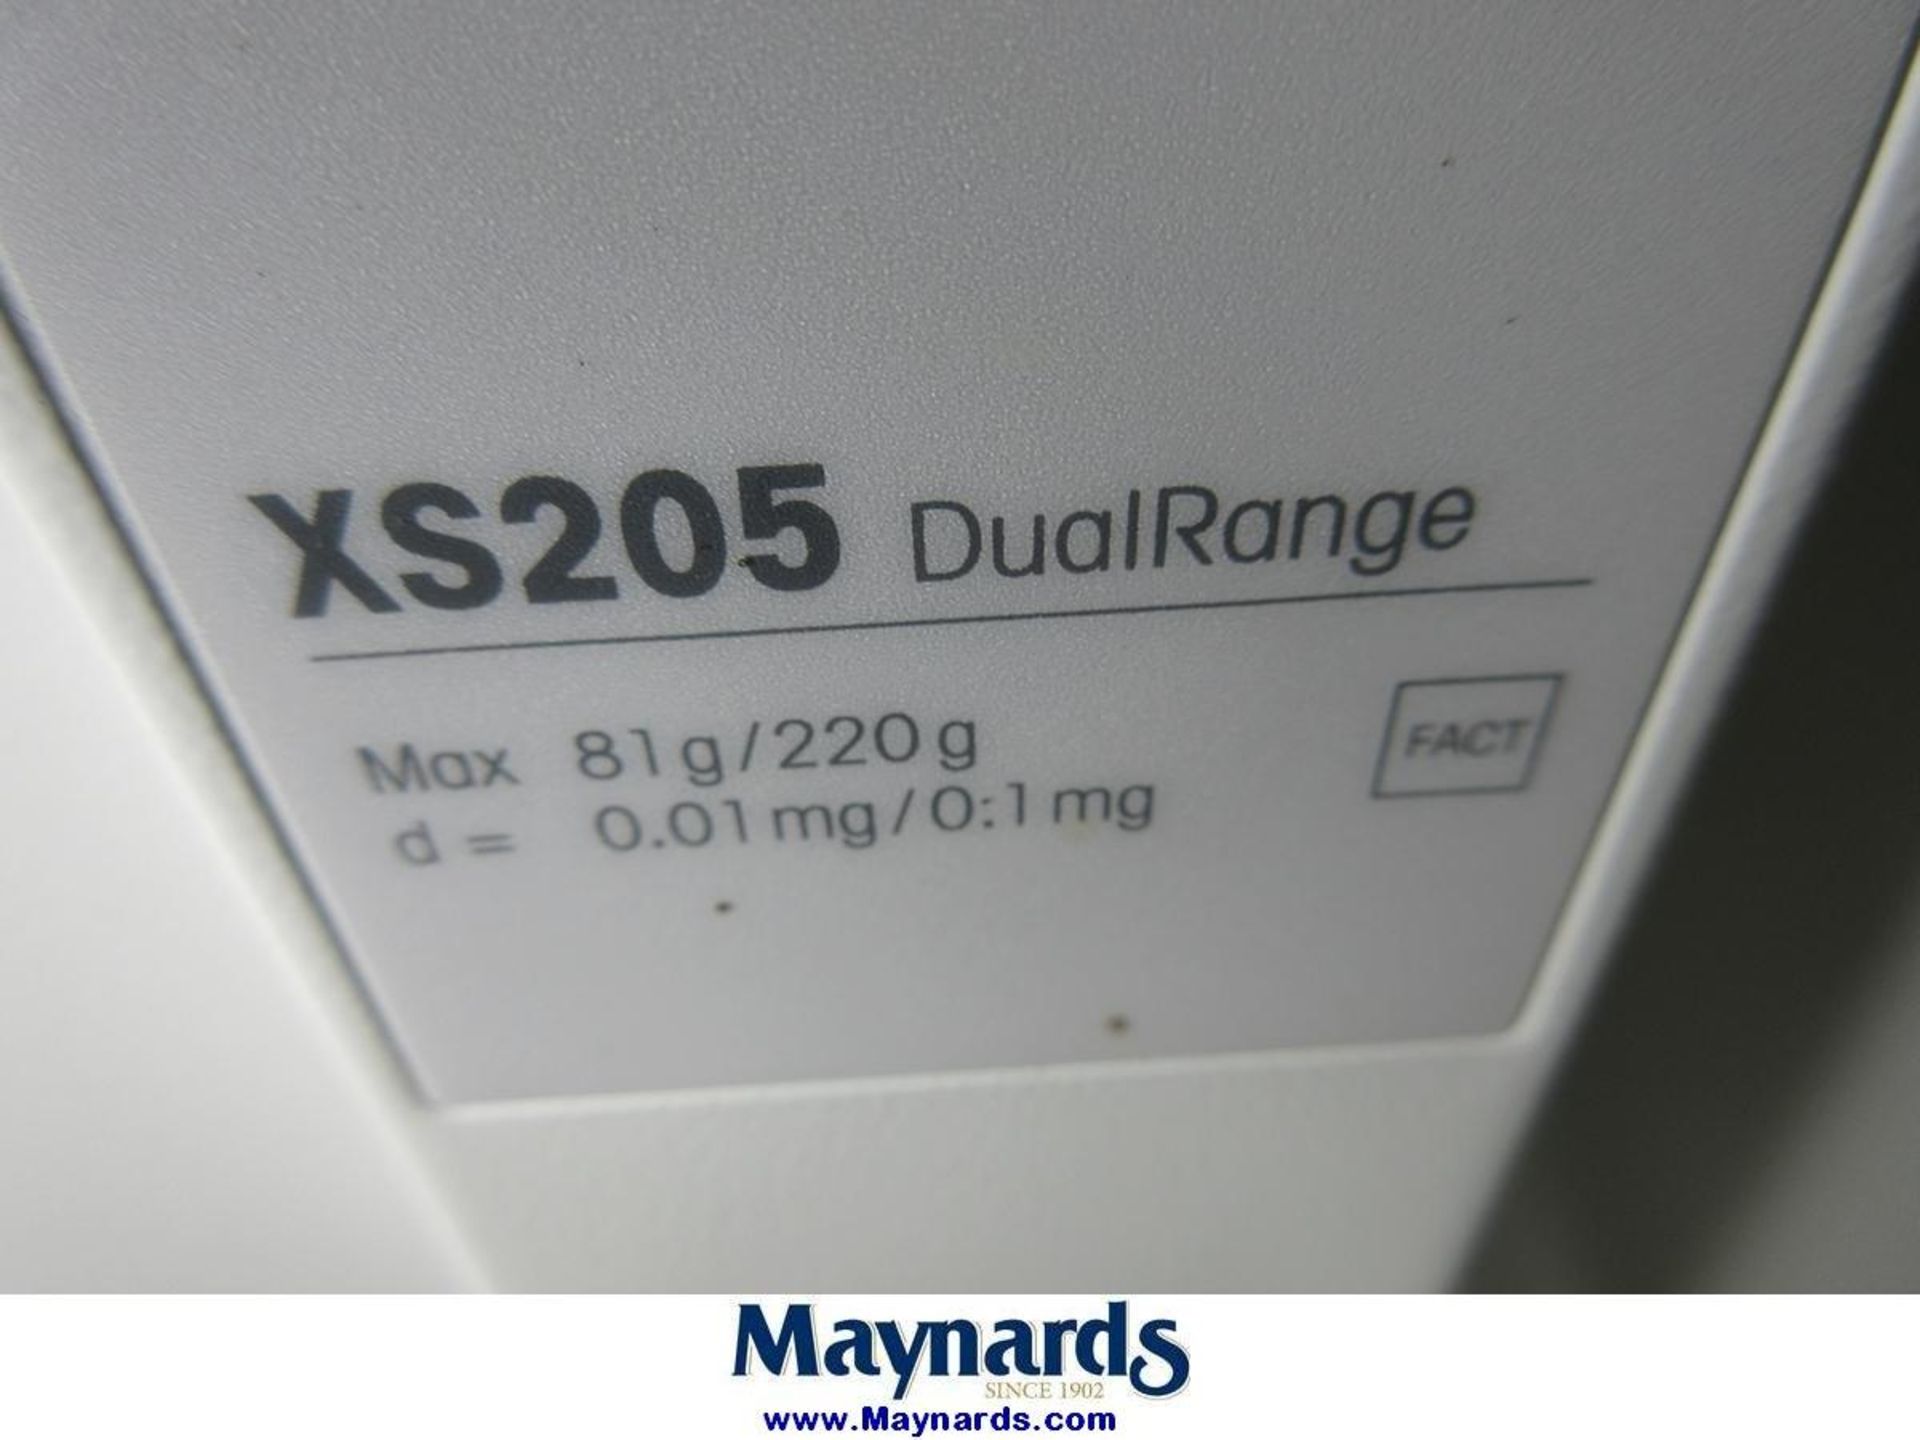 Metler Toledo XS205DU 81/220g Dual Range Digital Balance - Image 4 of 6